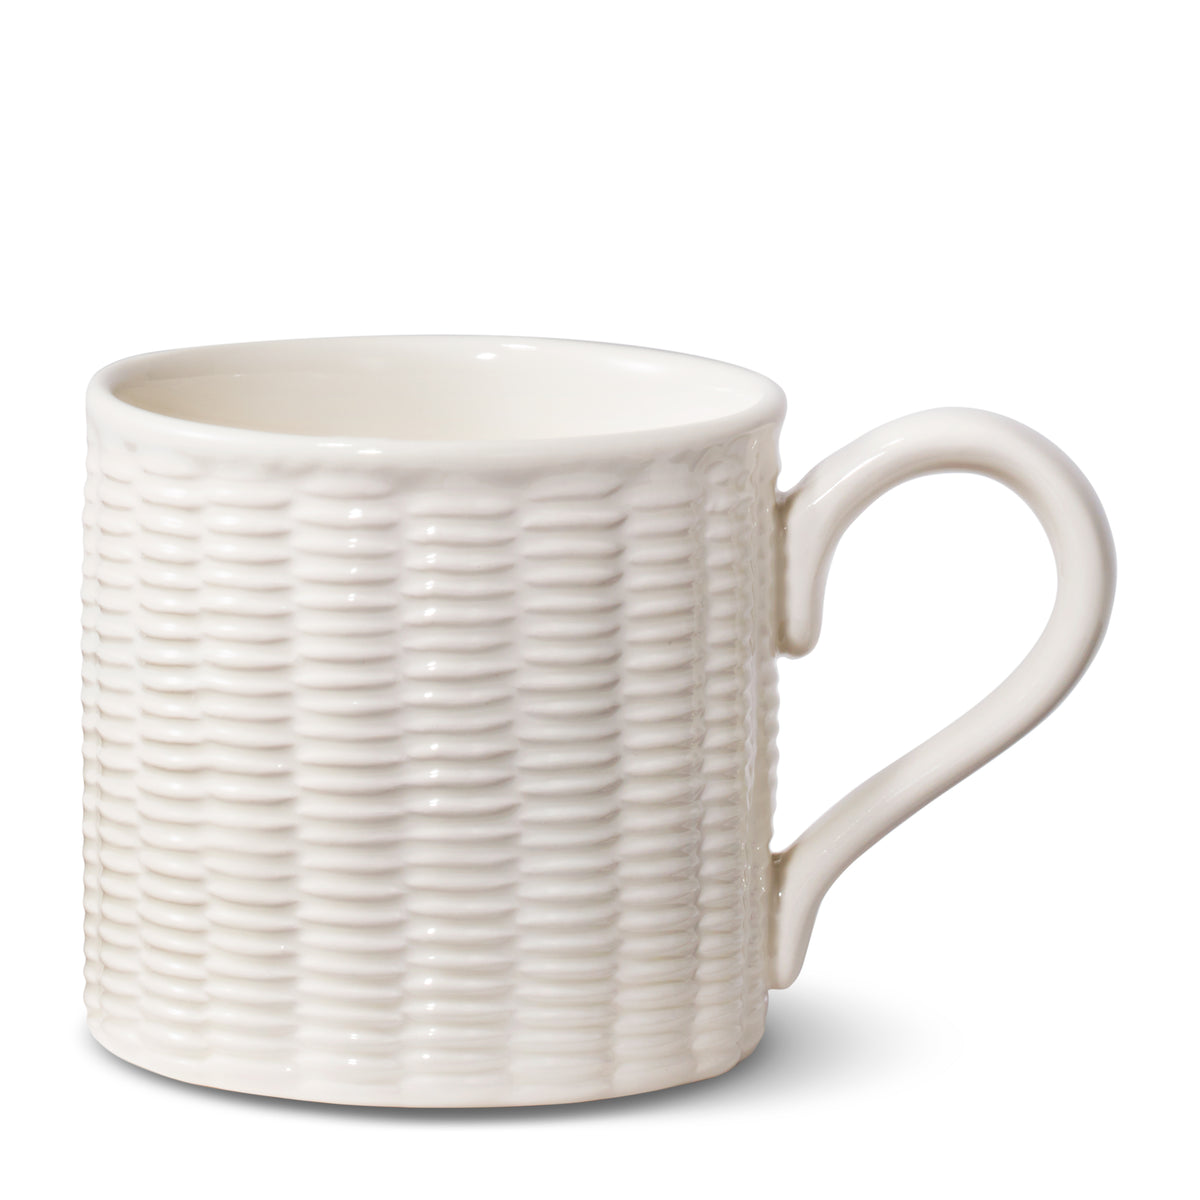 Leta Weave Mug, Set of 2